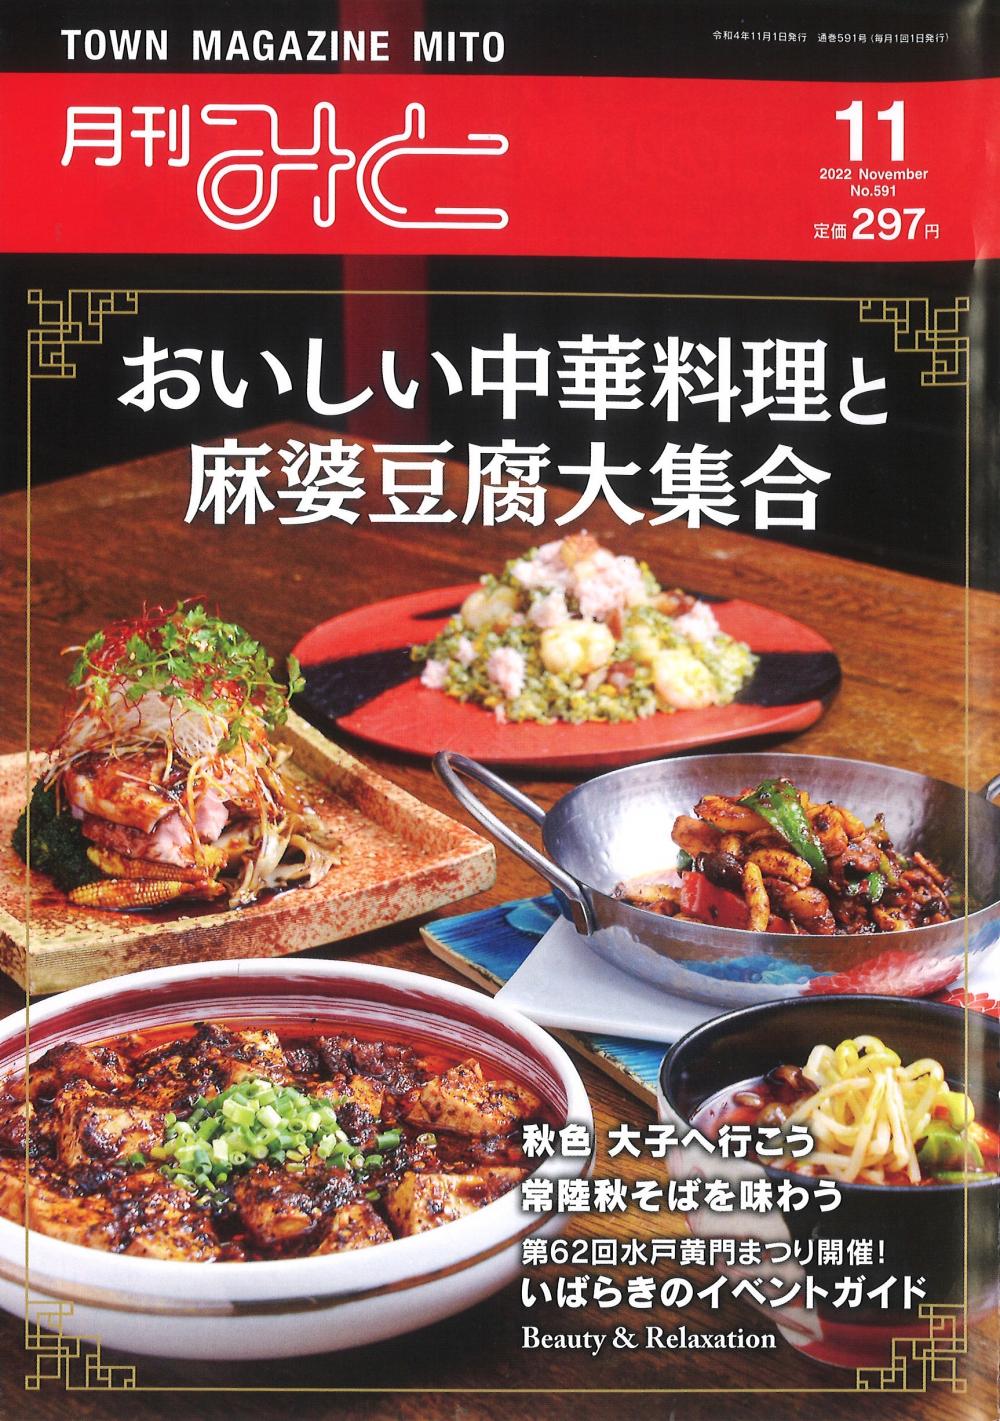 新そばイベント☆タウン情報誌「月刊みと」11月号に掲載に関するページ